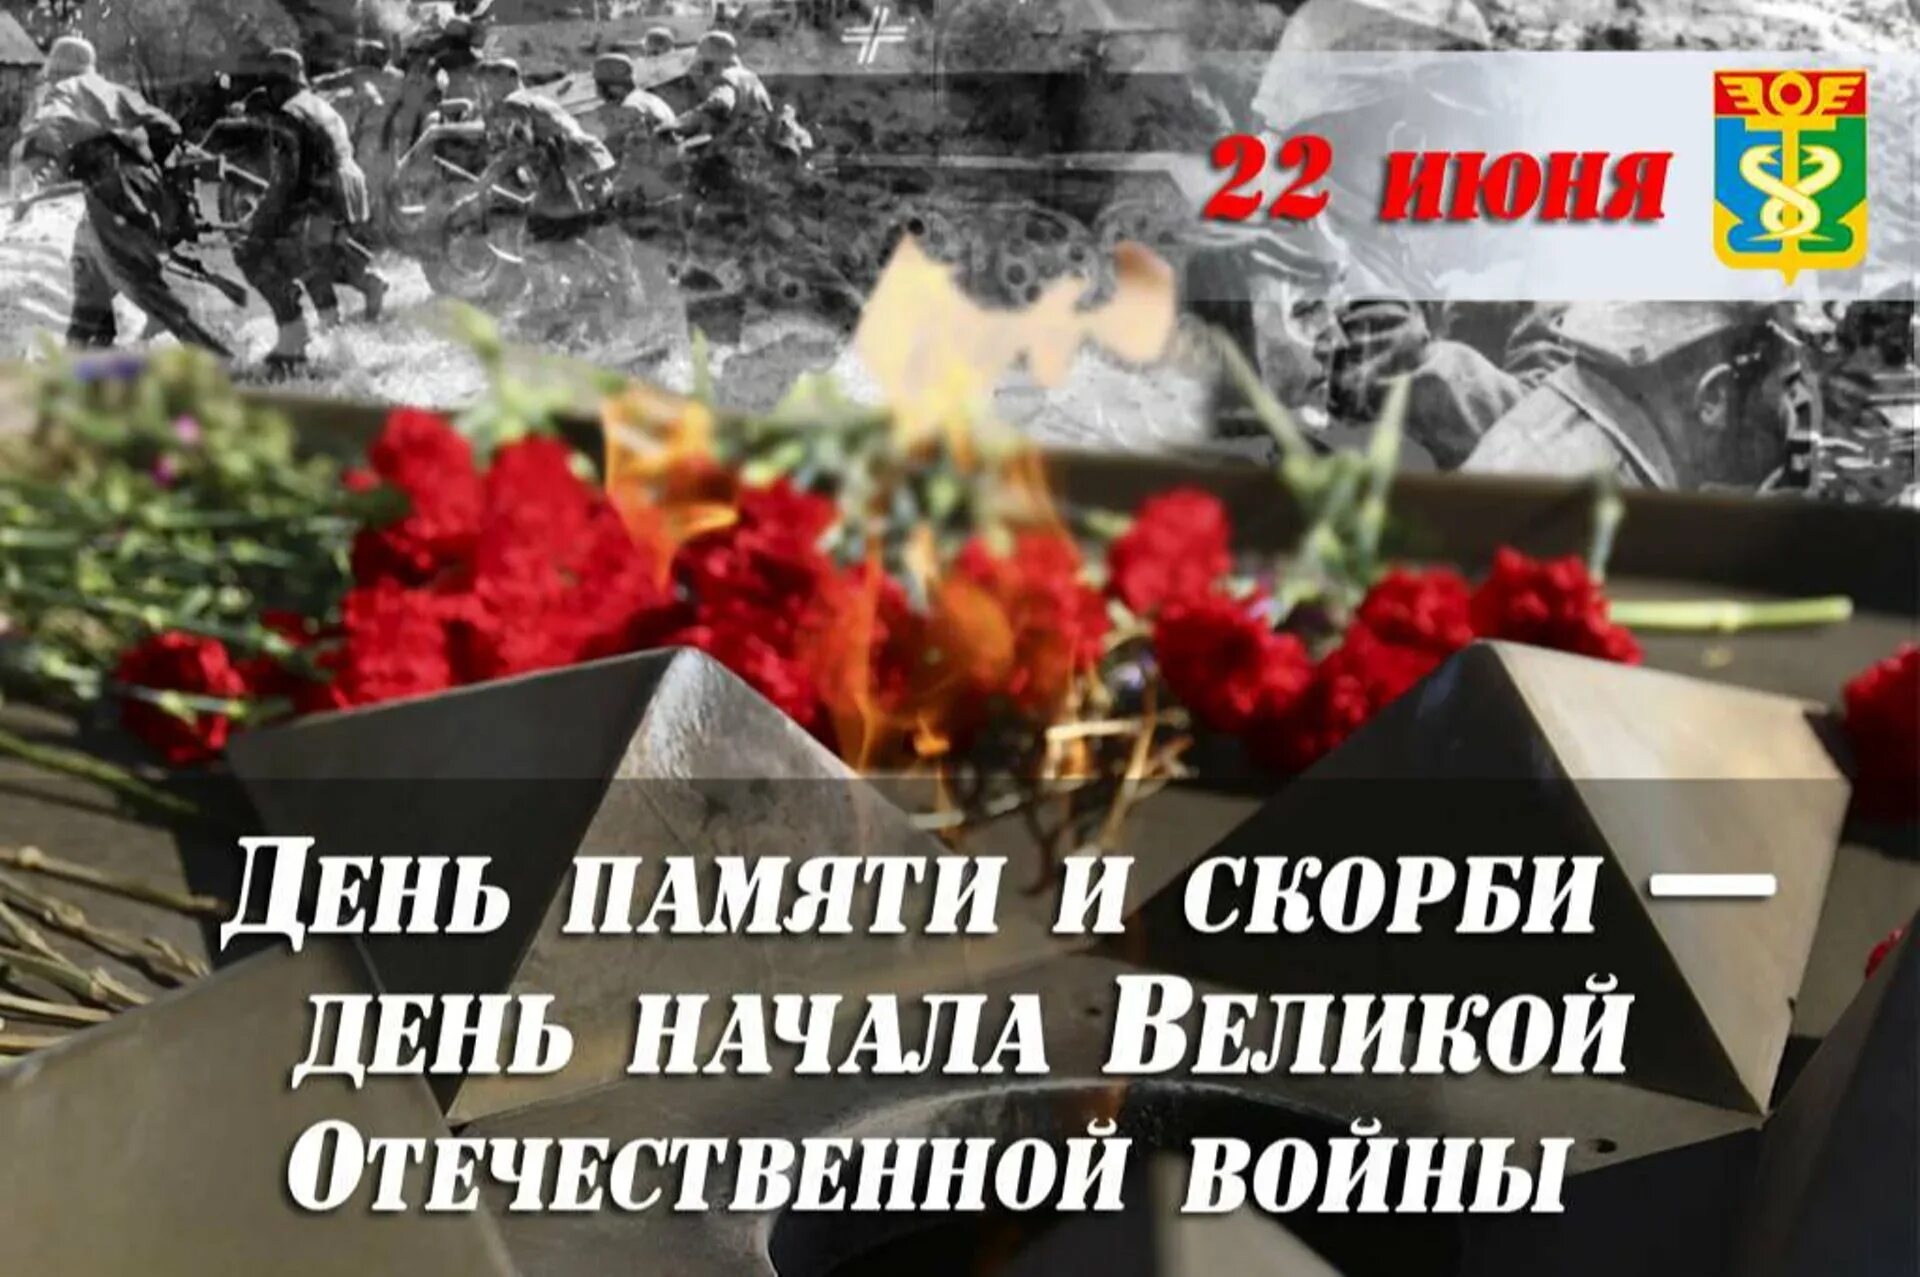 День памяти и скорби день начала Великой Отечественной войны 1941. День памяти и скорби 22 июня начала Великой Отечественной войны. 22 Июня 1941 года начало Великой Отечественной войны день памяти. День скорби.